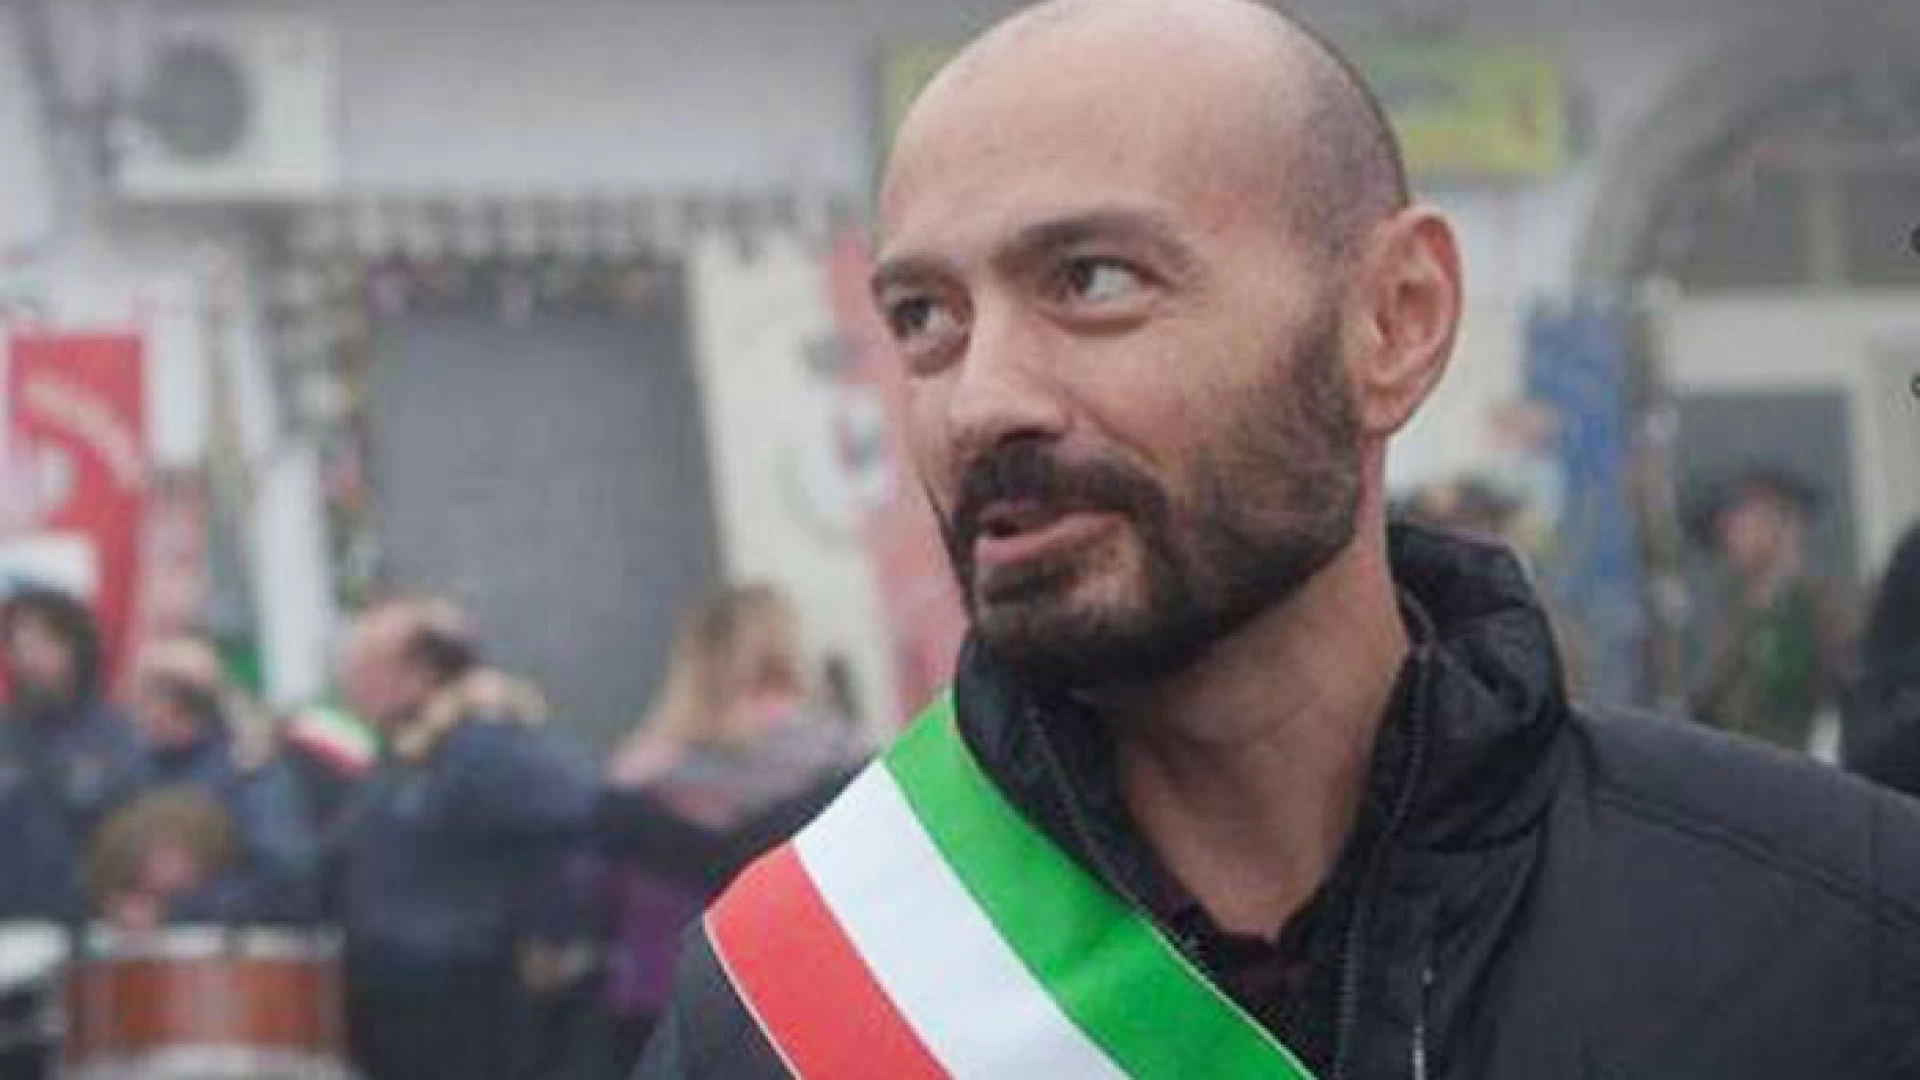 Venafro: Fratelli d’Italia si prepara alle prossime consultazioni regionali. Luciano Bucci nominato referente responsabile dell’area venafrana.